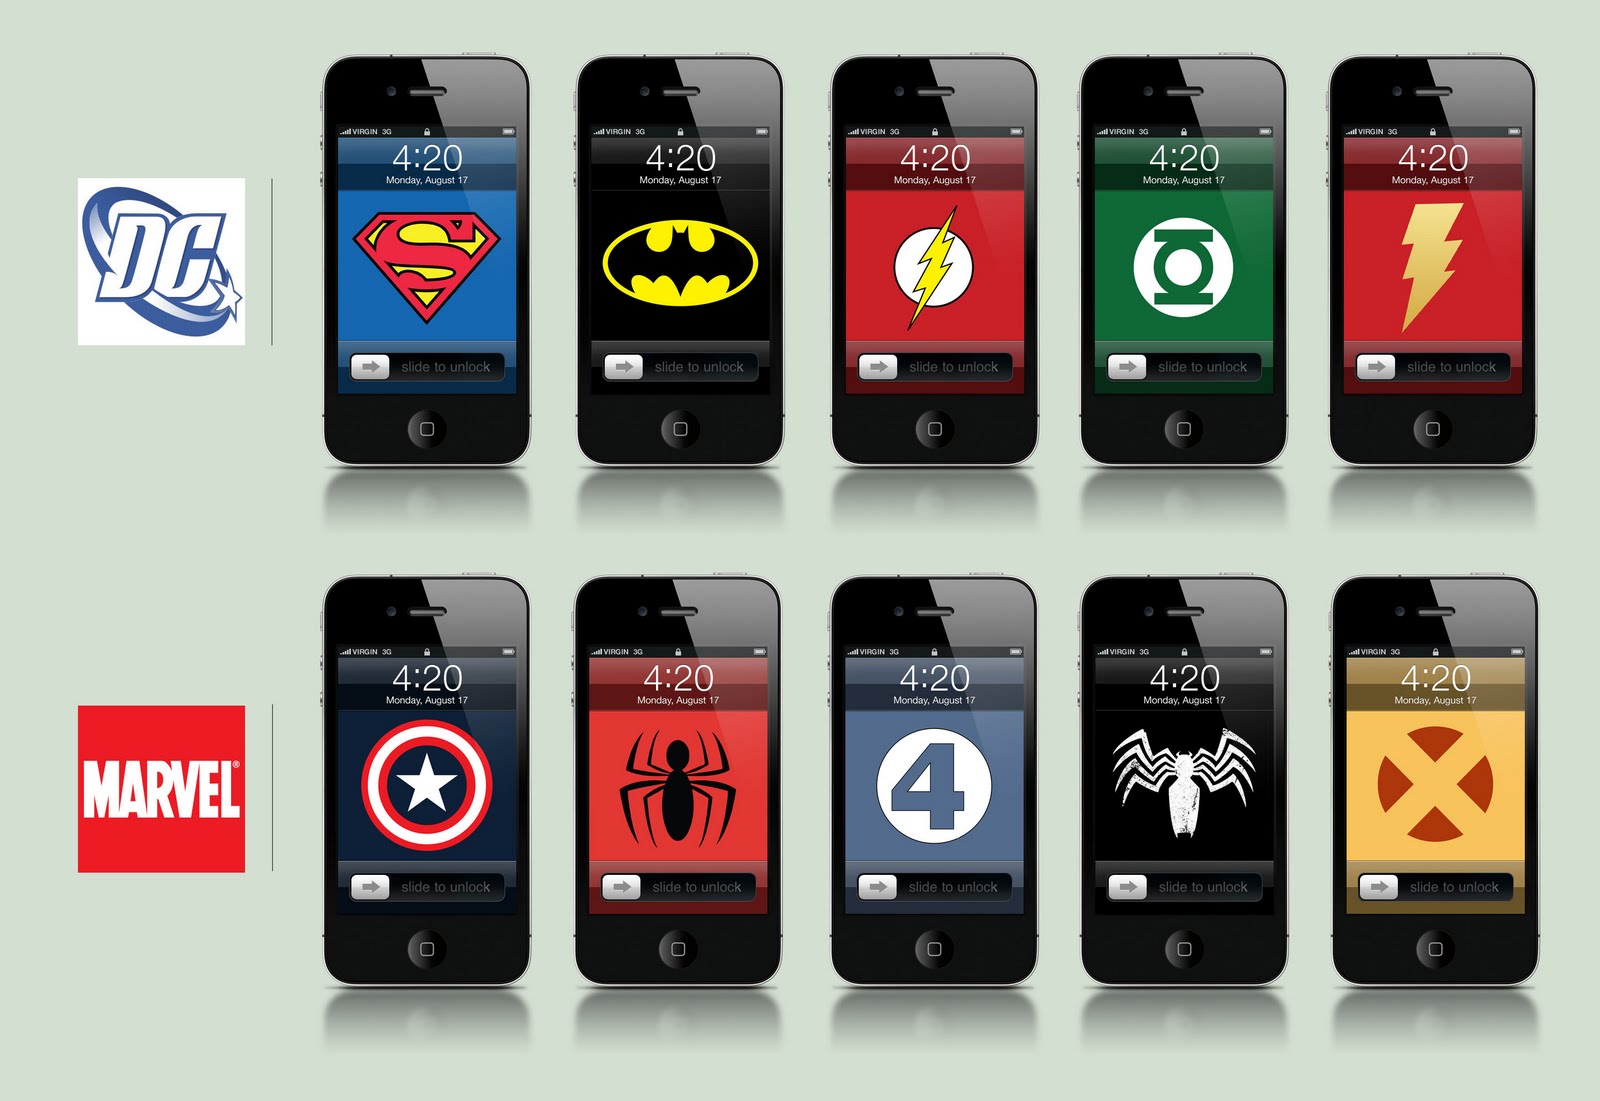 ... iPhone 4 paquetes con wallpapers de los cómics y superheroes más